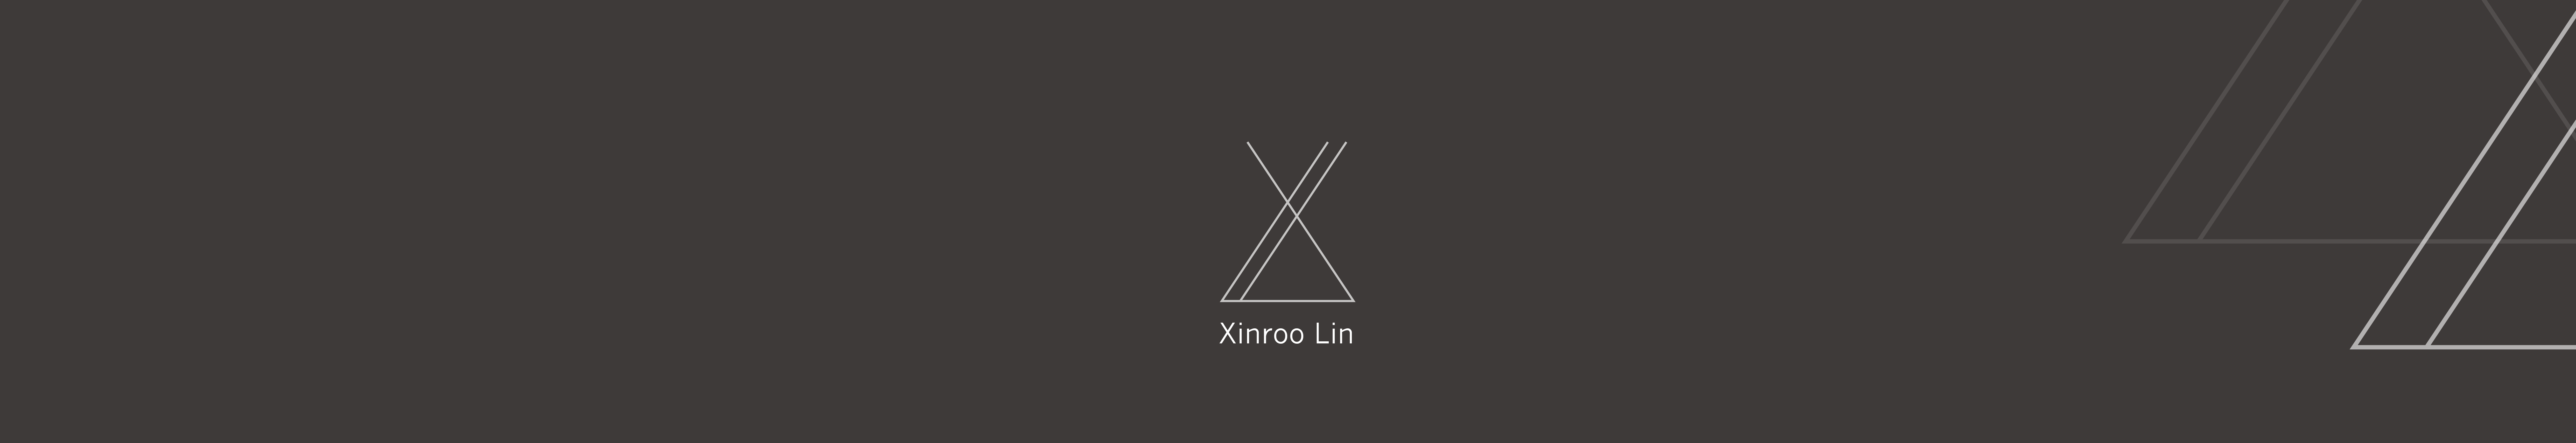 Xinroo Lin profil başlığı